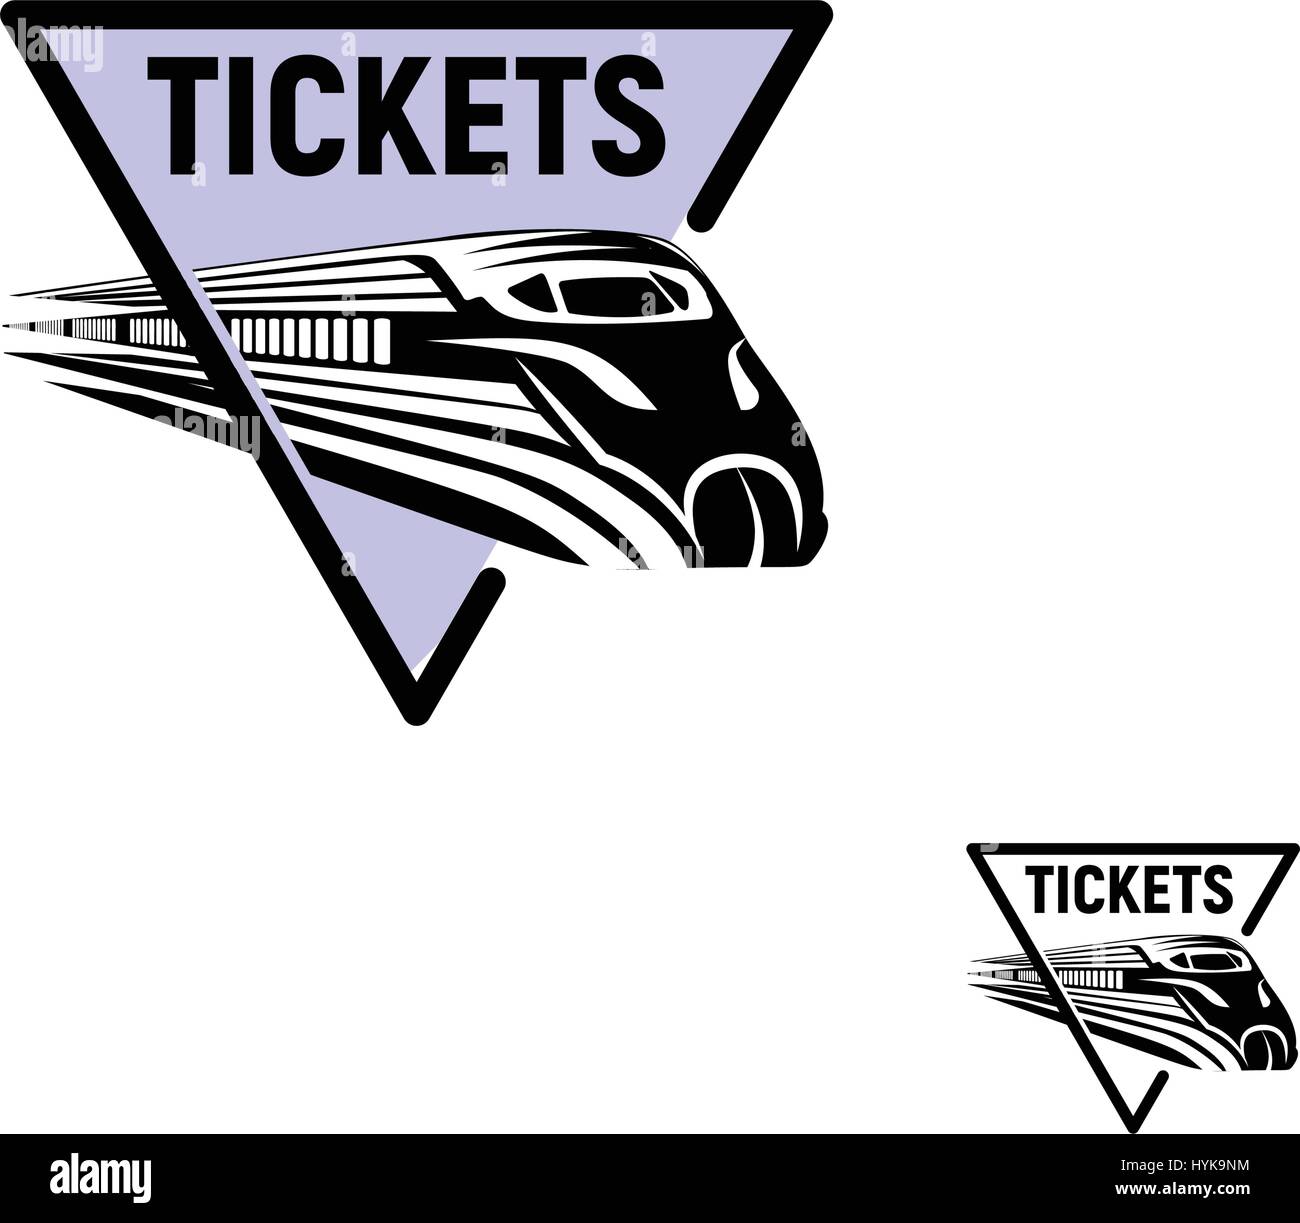 La couleur noire résumé isolés dans le cadre de forme triangulaire violet sur fond blanc logo monochrome, transport ferroviaire moderne logotype, élément de fer dans leur gravure vector illustration Illustration de Vecteur